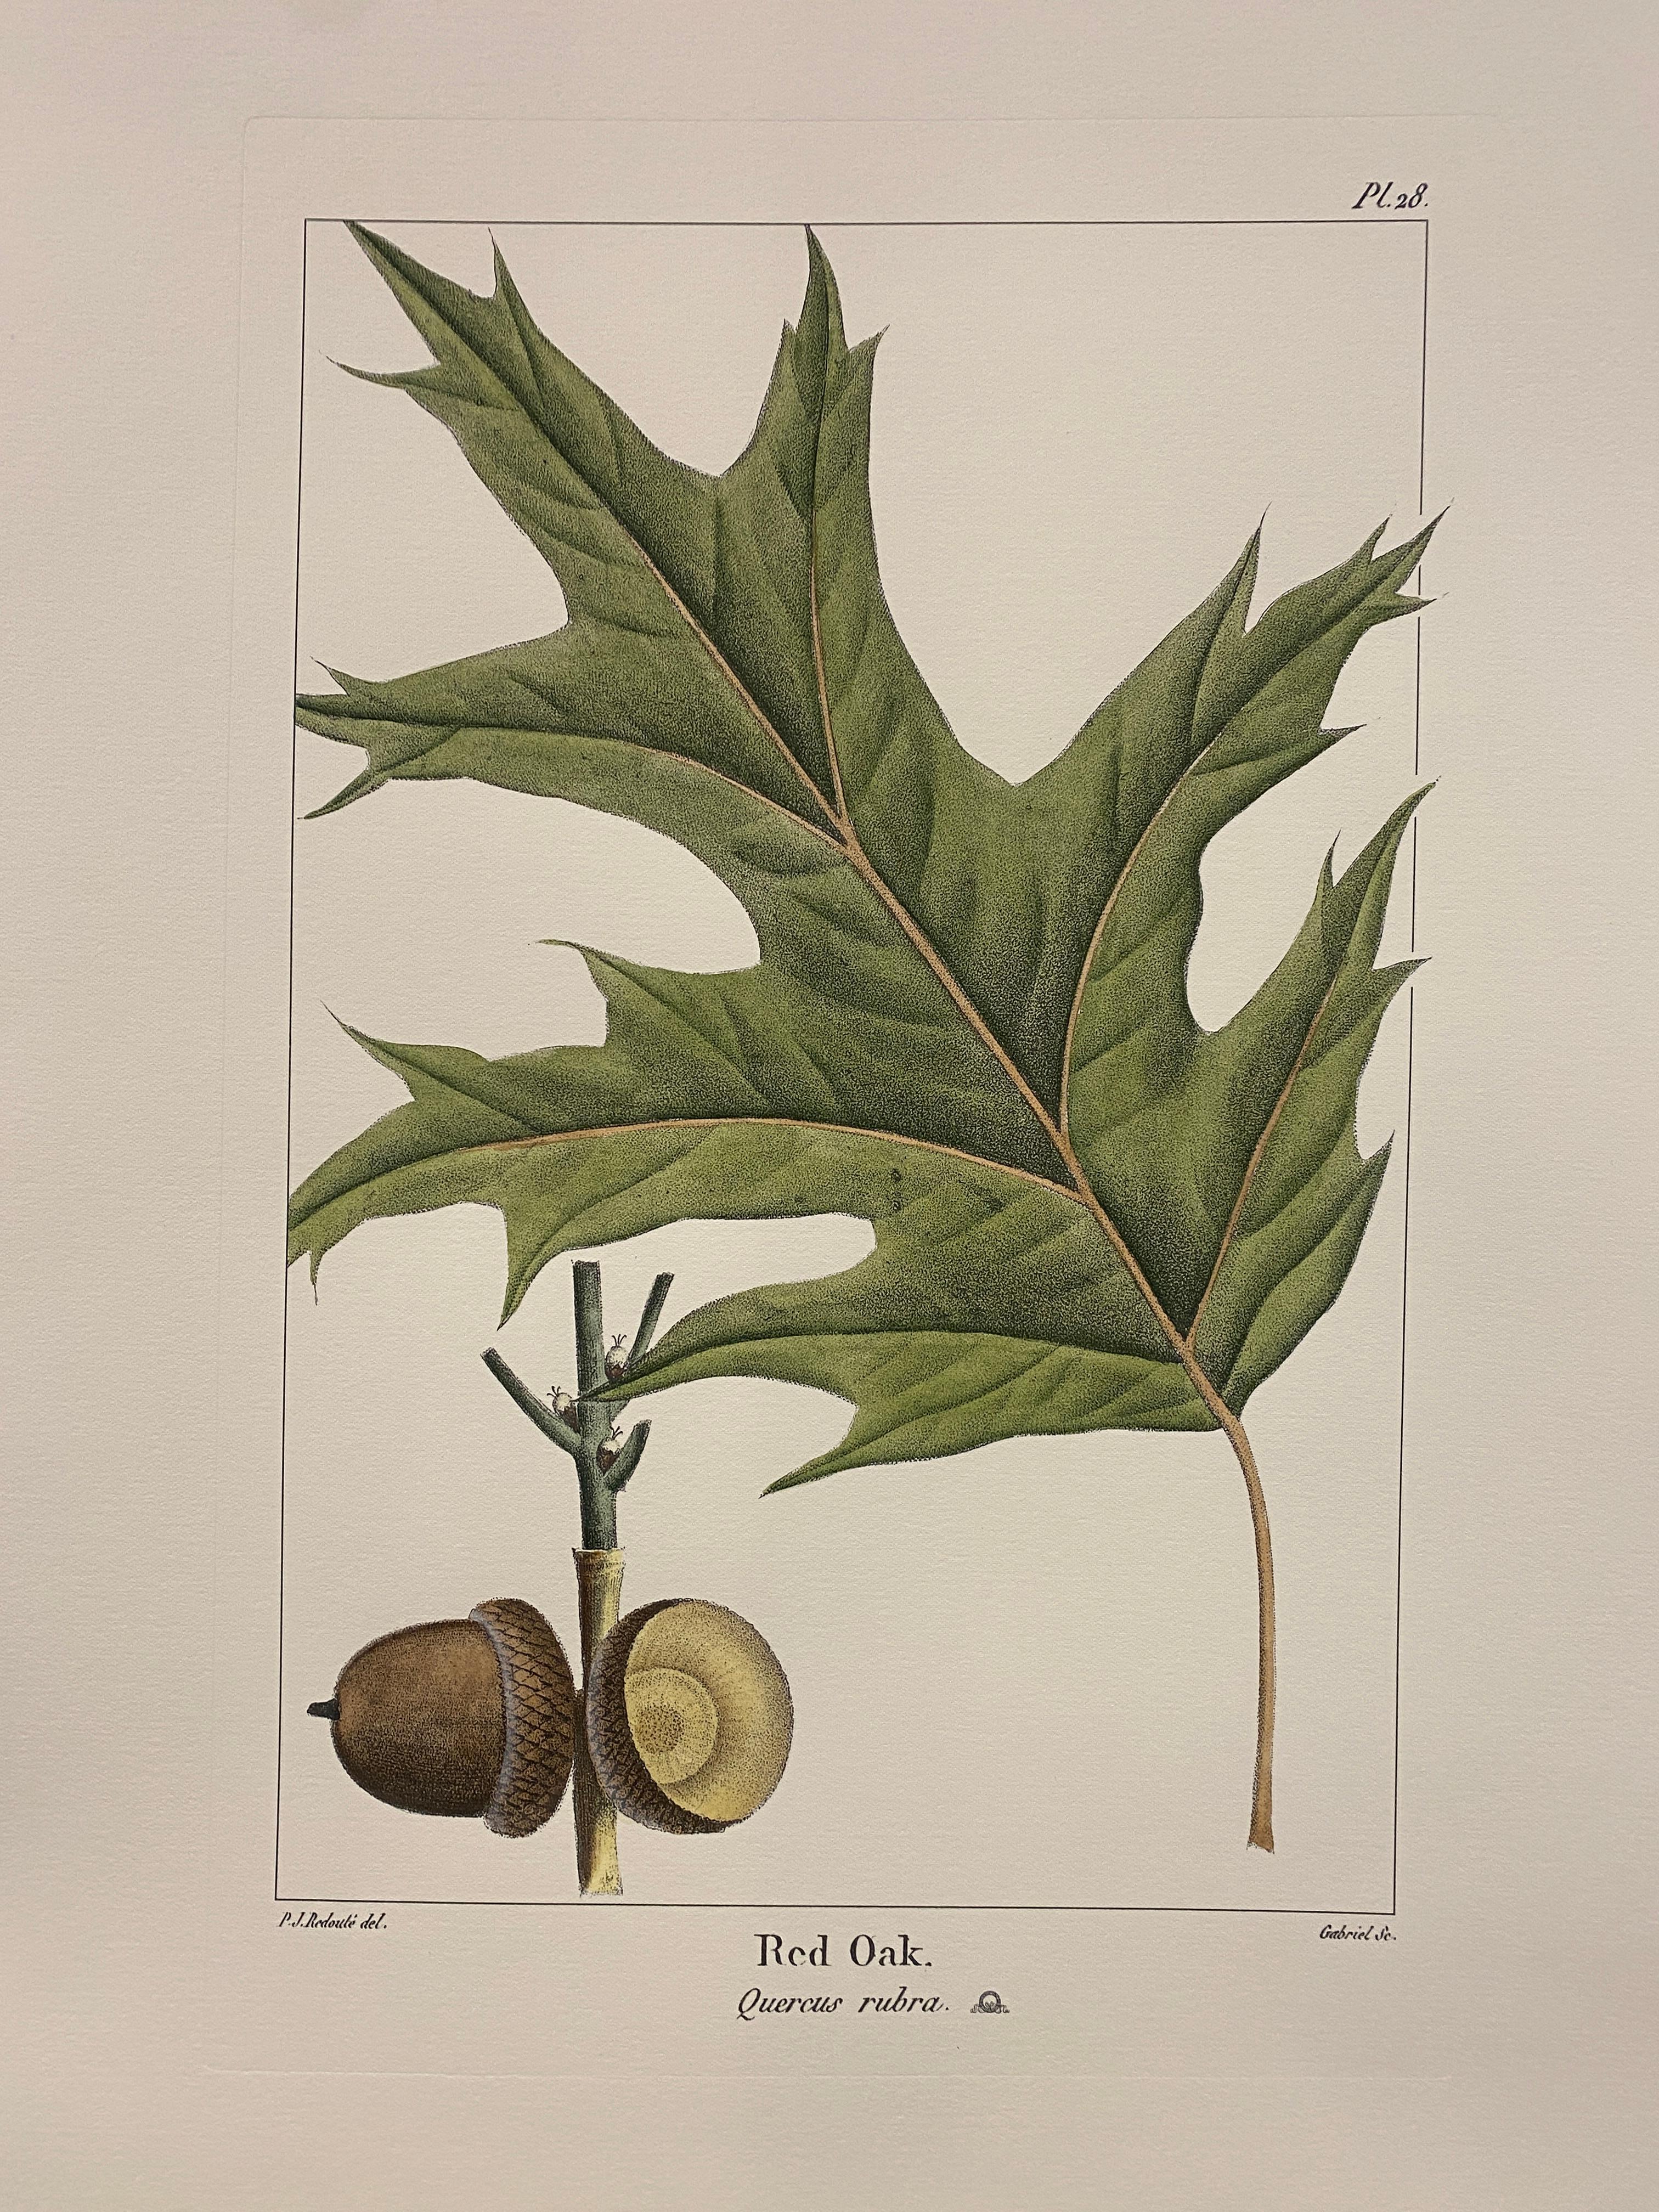 Estampe de la Collection Botanique Arbres représentant le chêne rouge, enrichie de couleurs vertes et brunes et de nuances d'aquarelle, pour la rendre plus réaliste.

D'autres imprimés de fleurs Bulbacee sont disponibles pour créer une composition